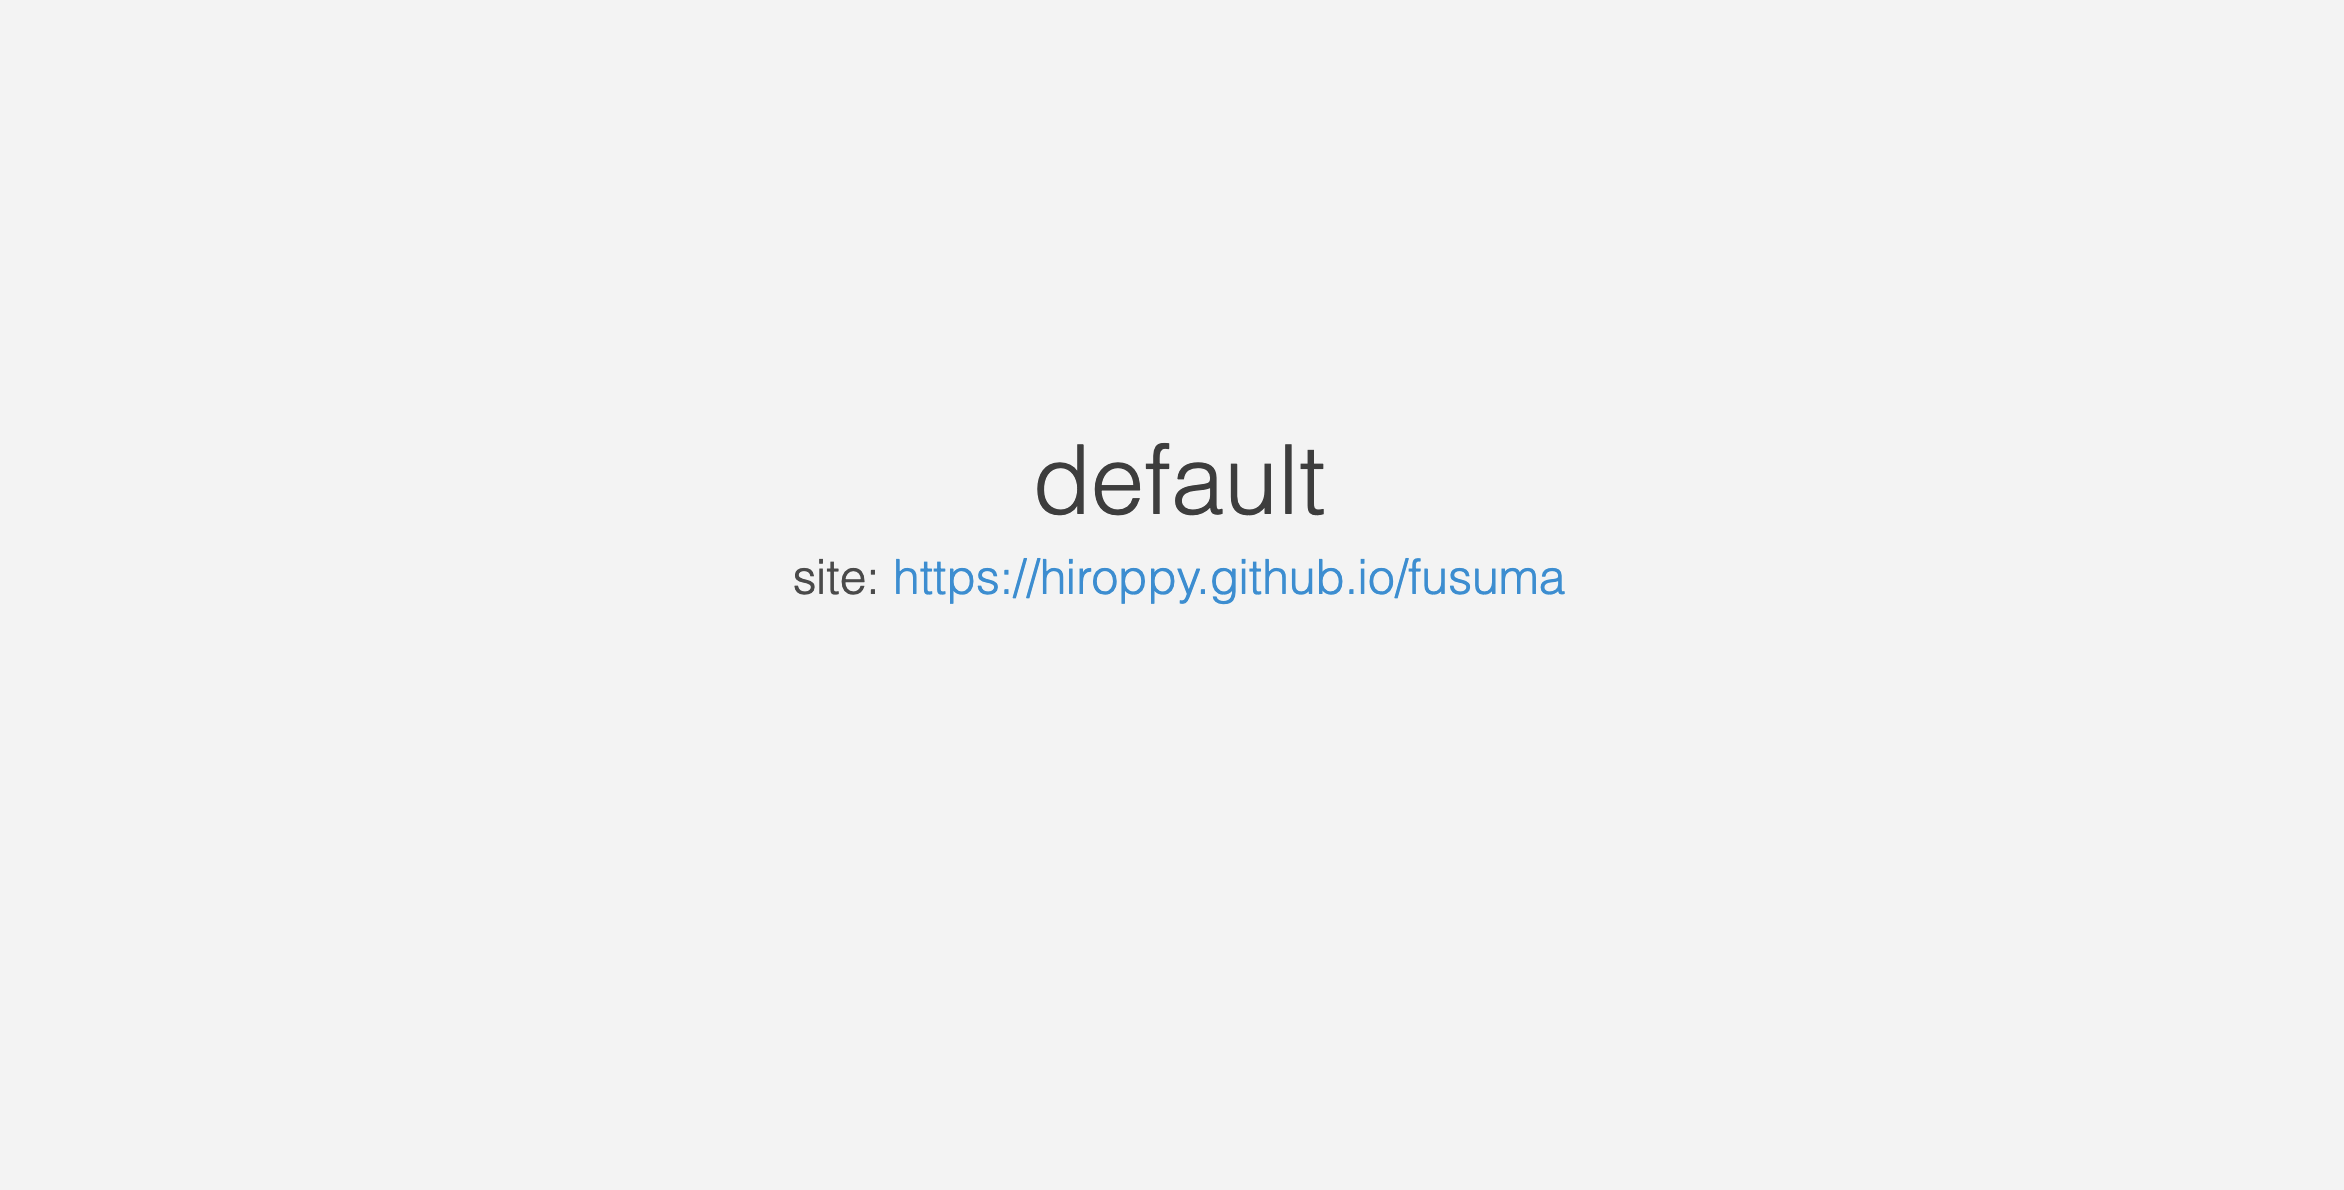 default.png